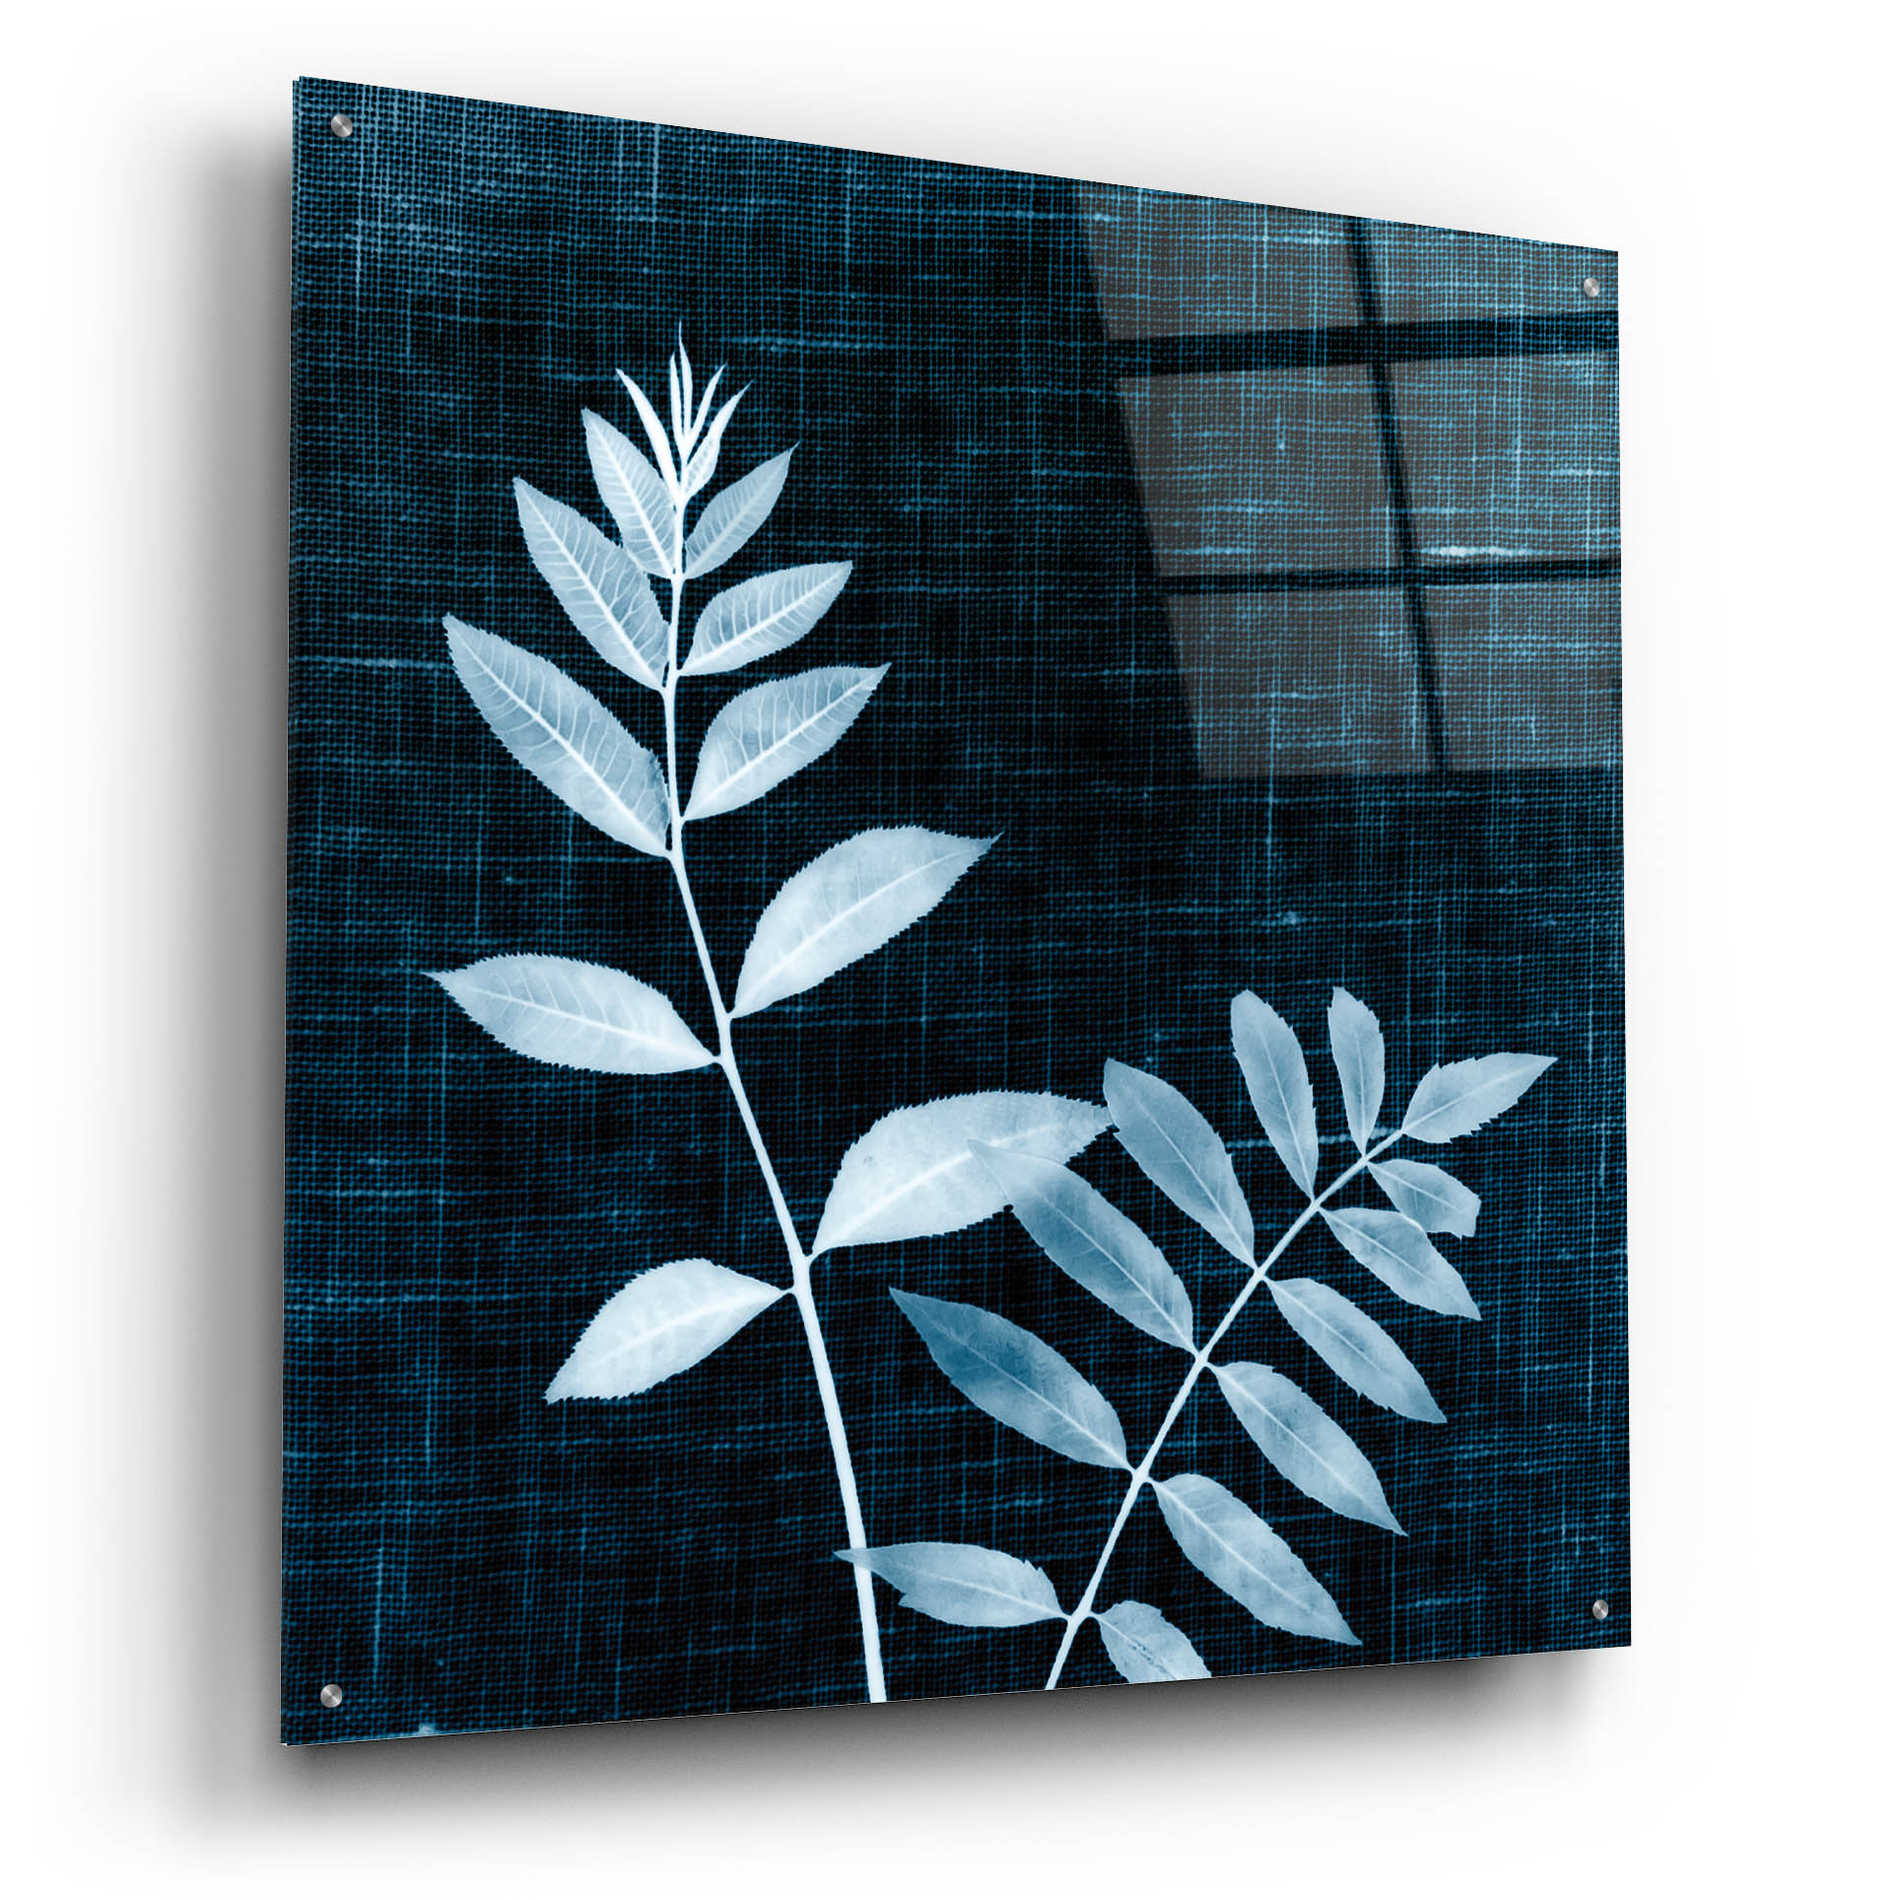 Epic Art 'Leaves on Linen II' by Debra Van Swearingen, Acrylic Glass Wall Art,36x36